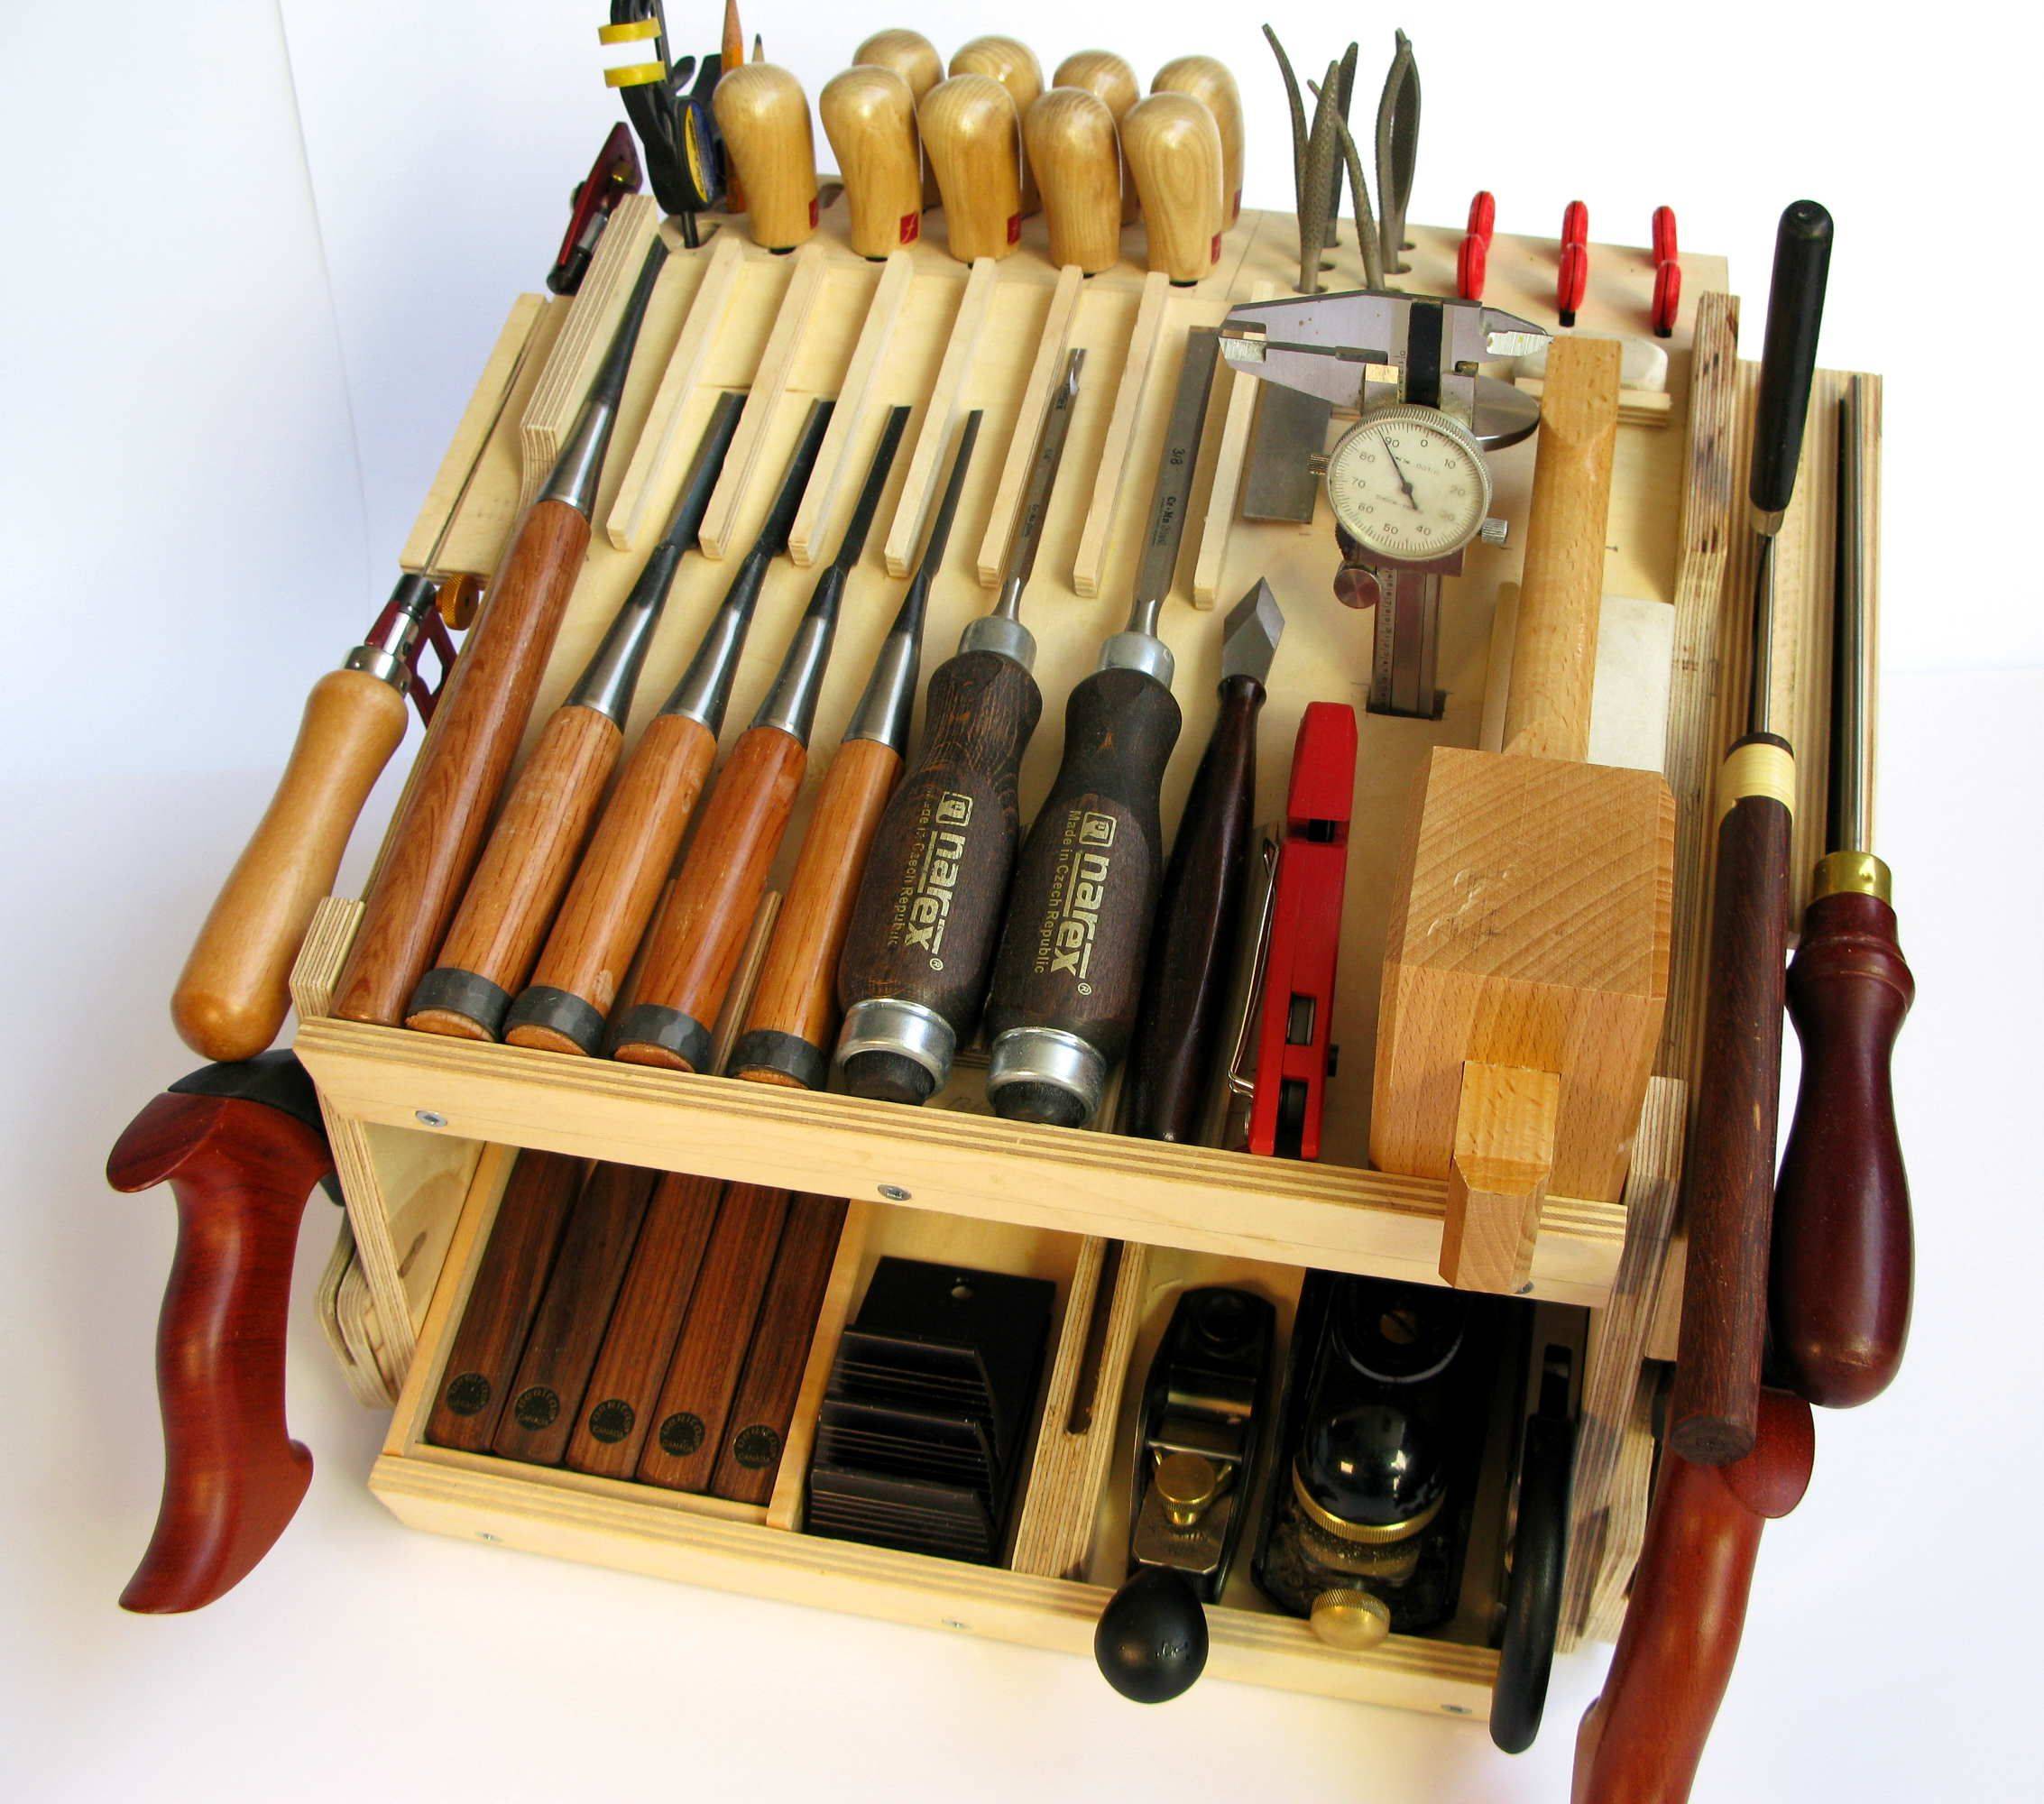 Инструмент для деревообработки: ручные и электрические устройства, применяемые в домашних условиях